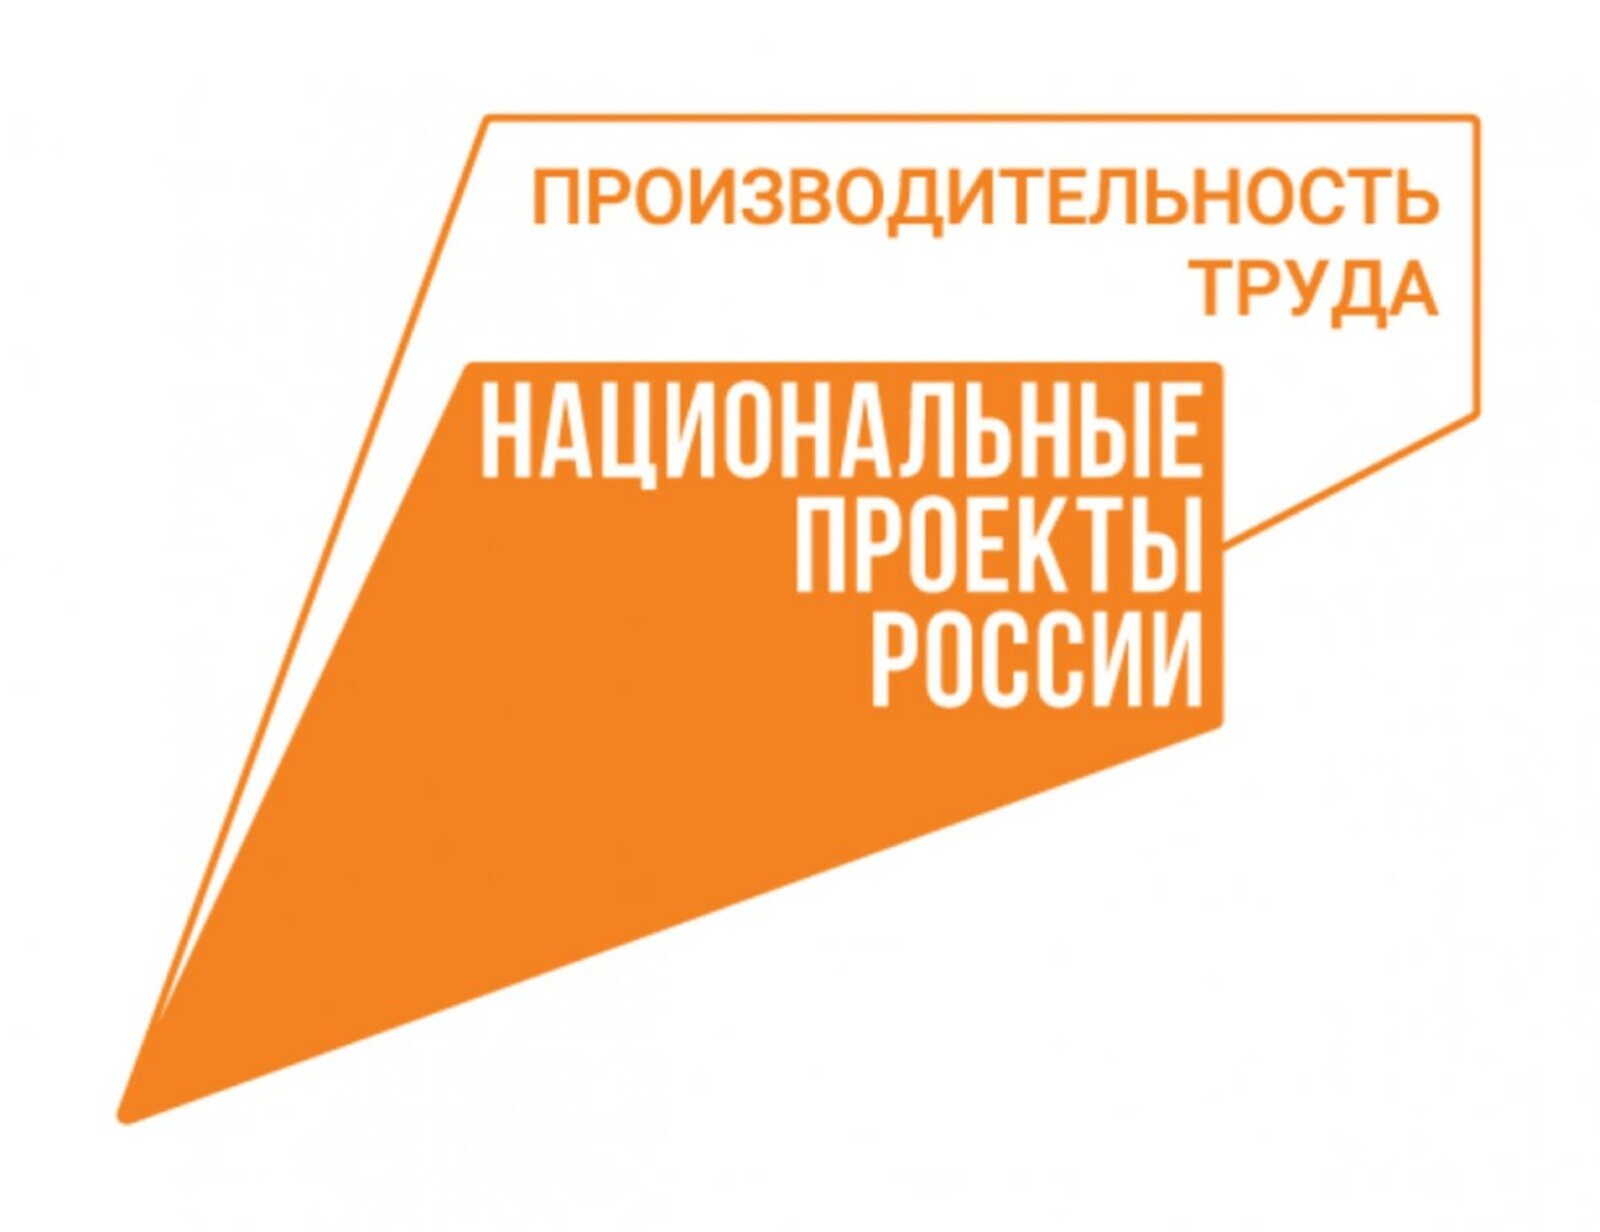 Открылся прием заявок для участия во Всероссийском конкурсе массового рационализаторства